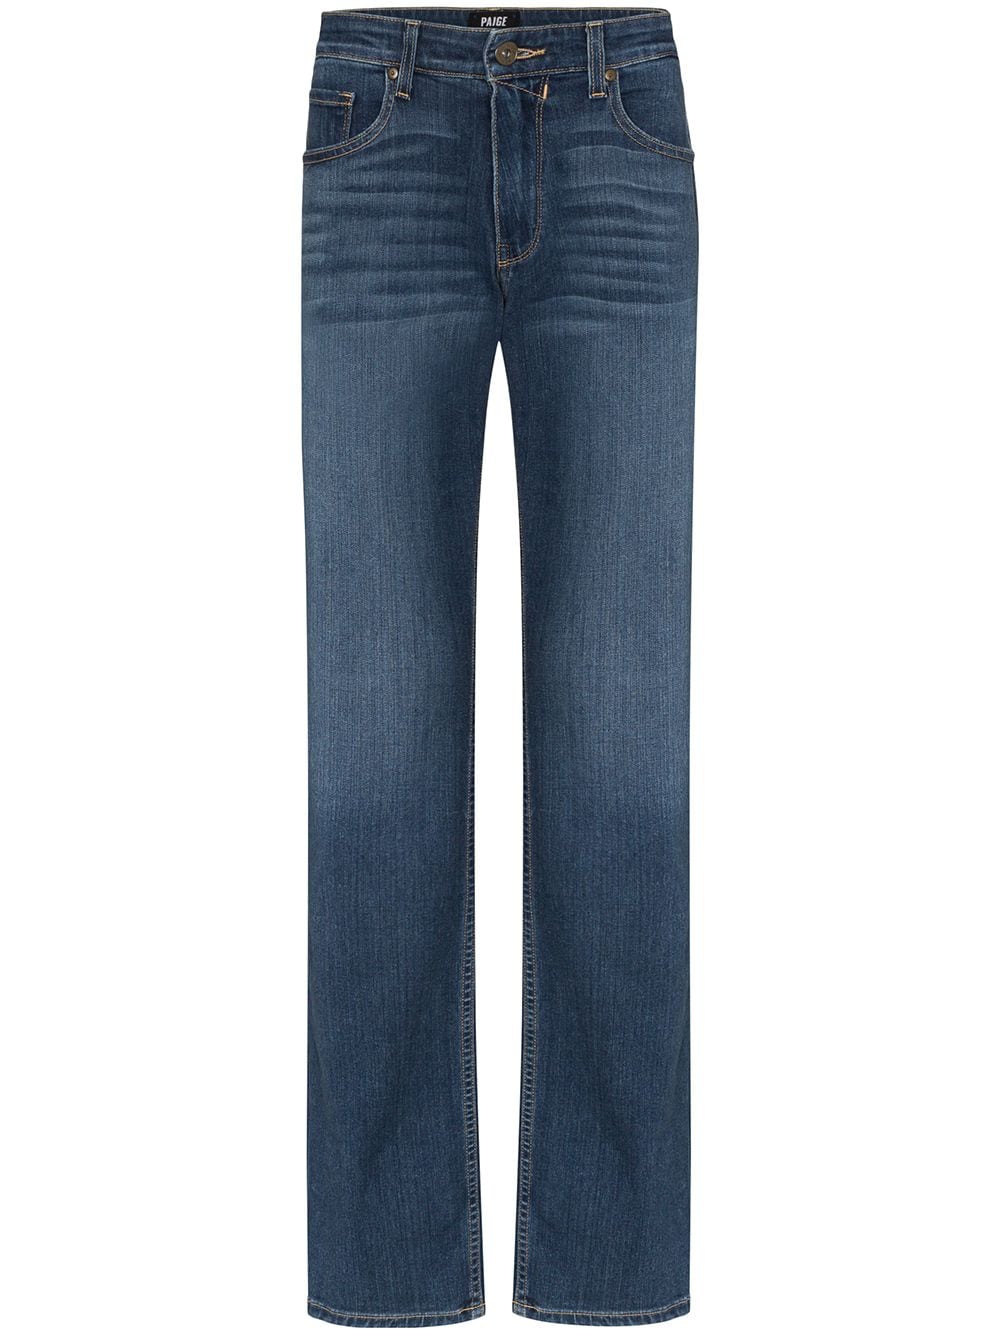 PAIGE Normandie Straight Leg Jeans | Smart Closet